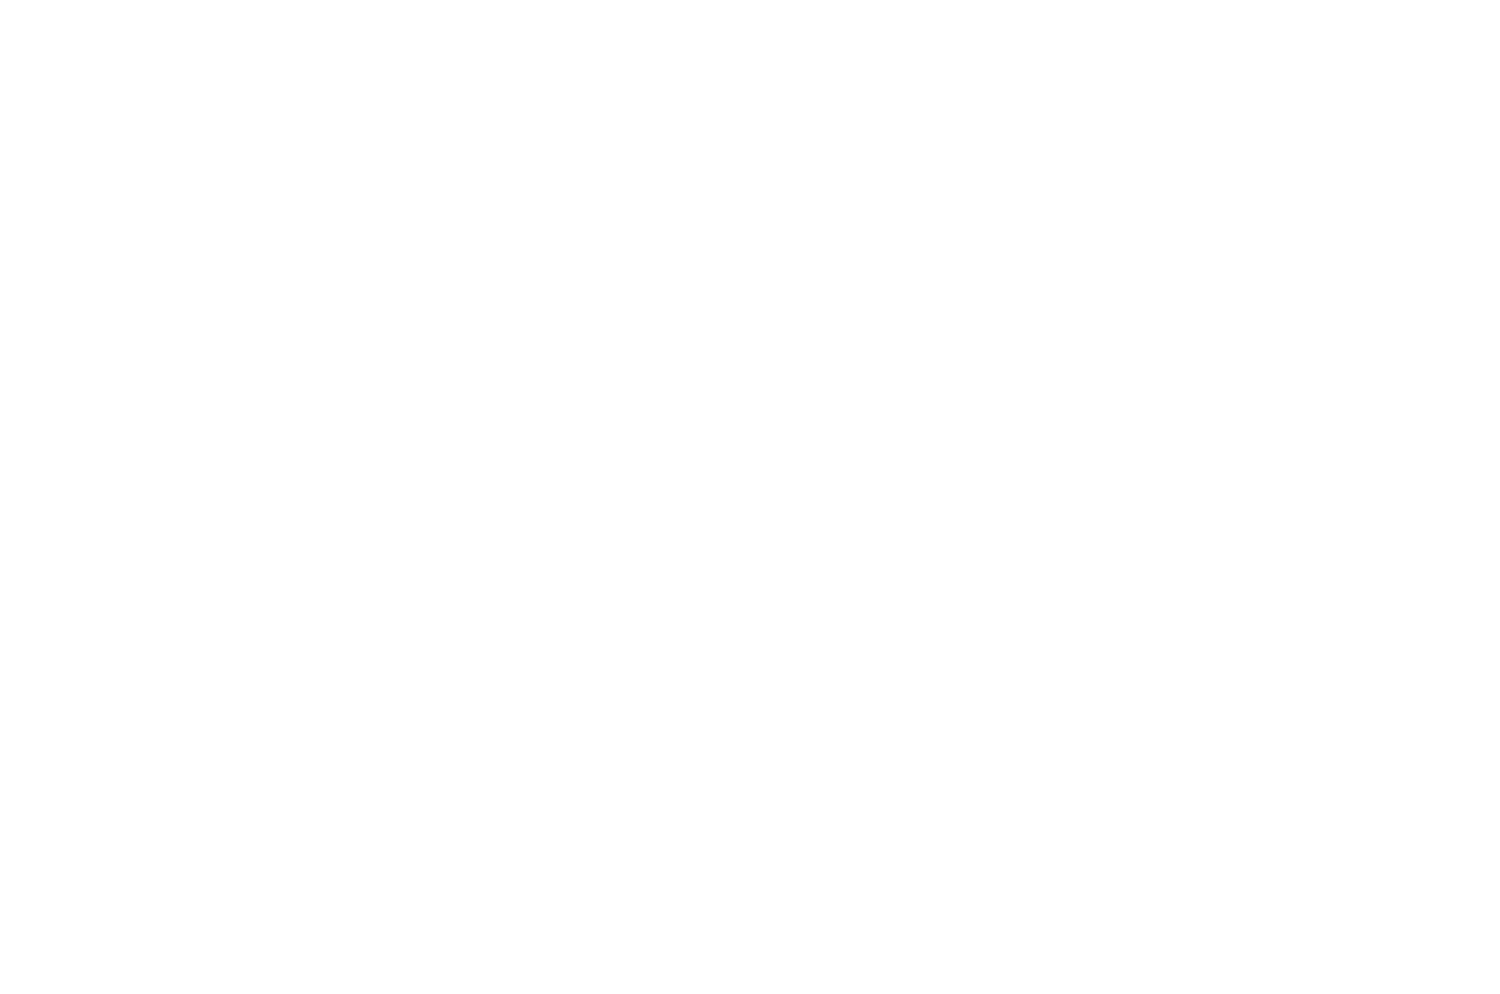 NextCycle